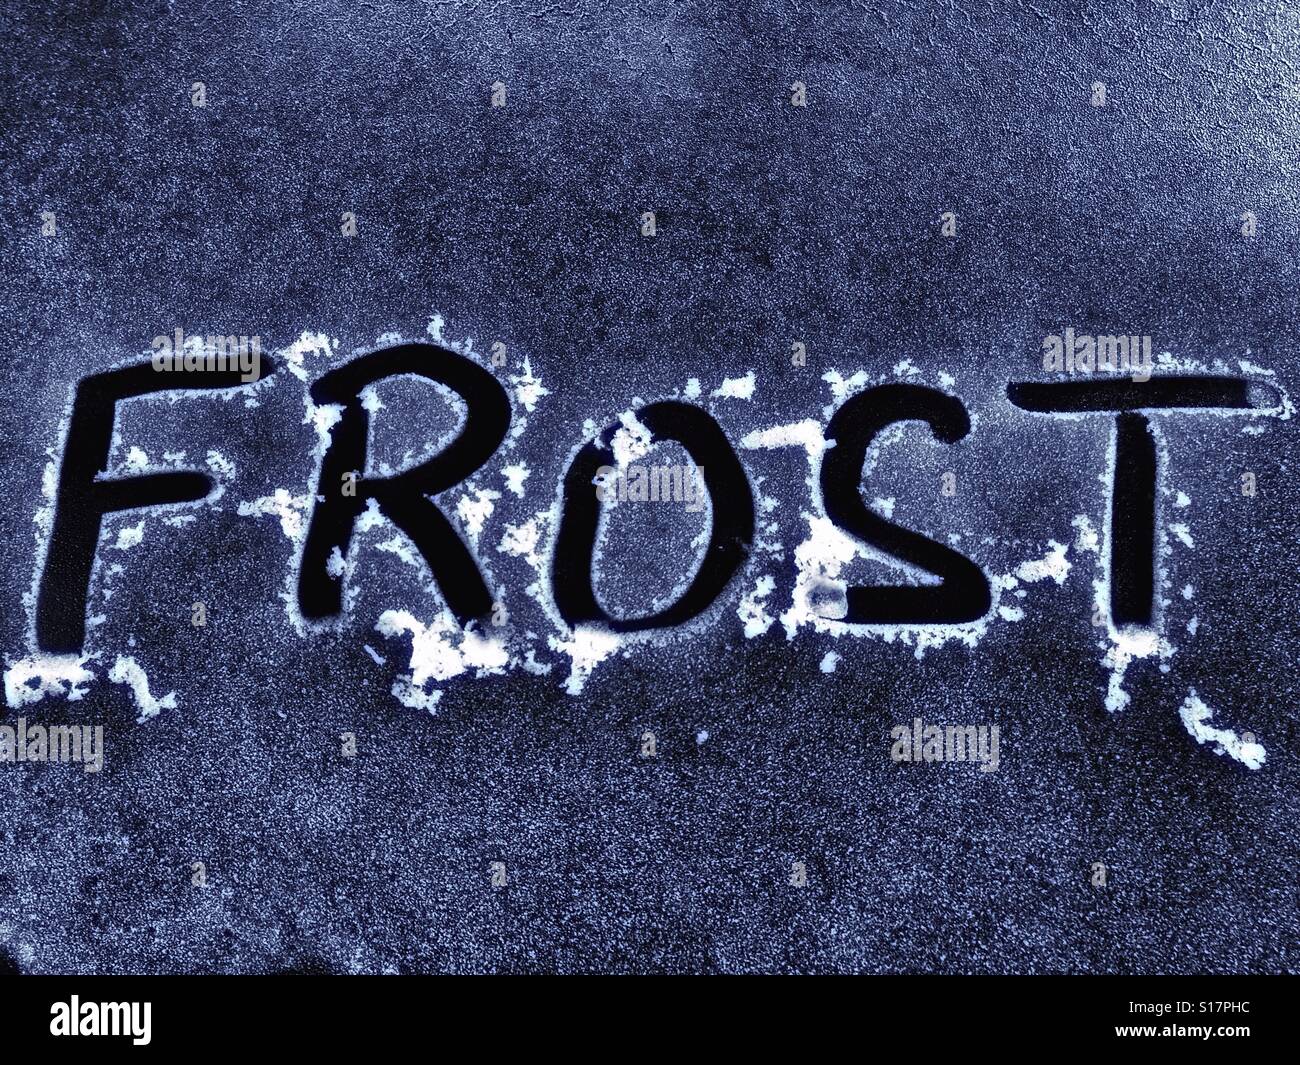 Mit dem Finger „Frost“ auf die gefrorene Autoscheibe schreiben